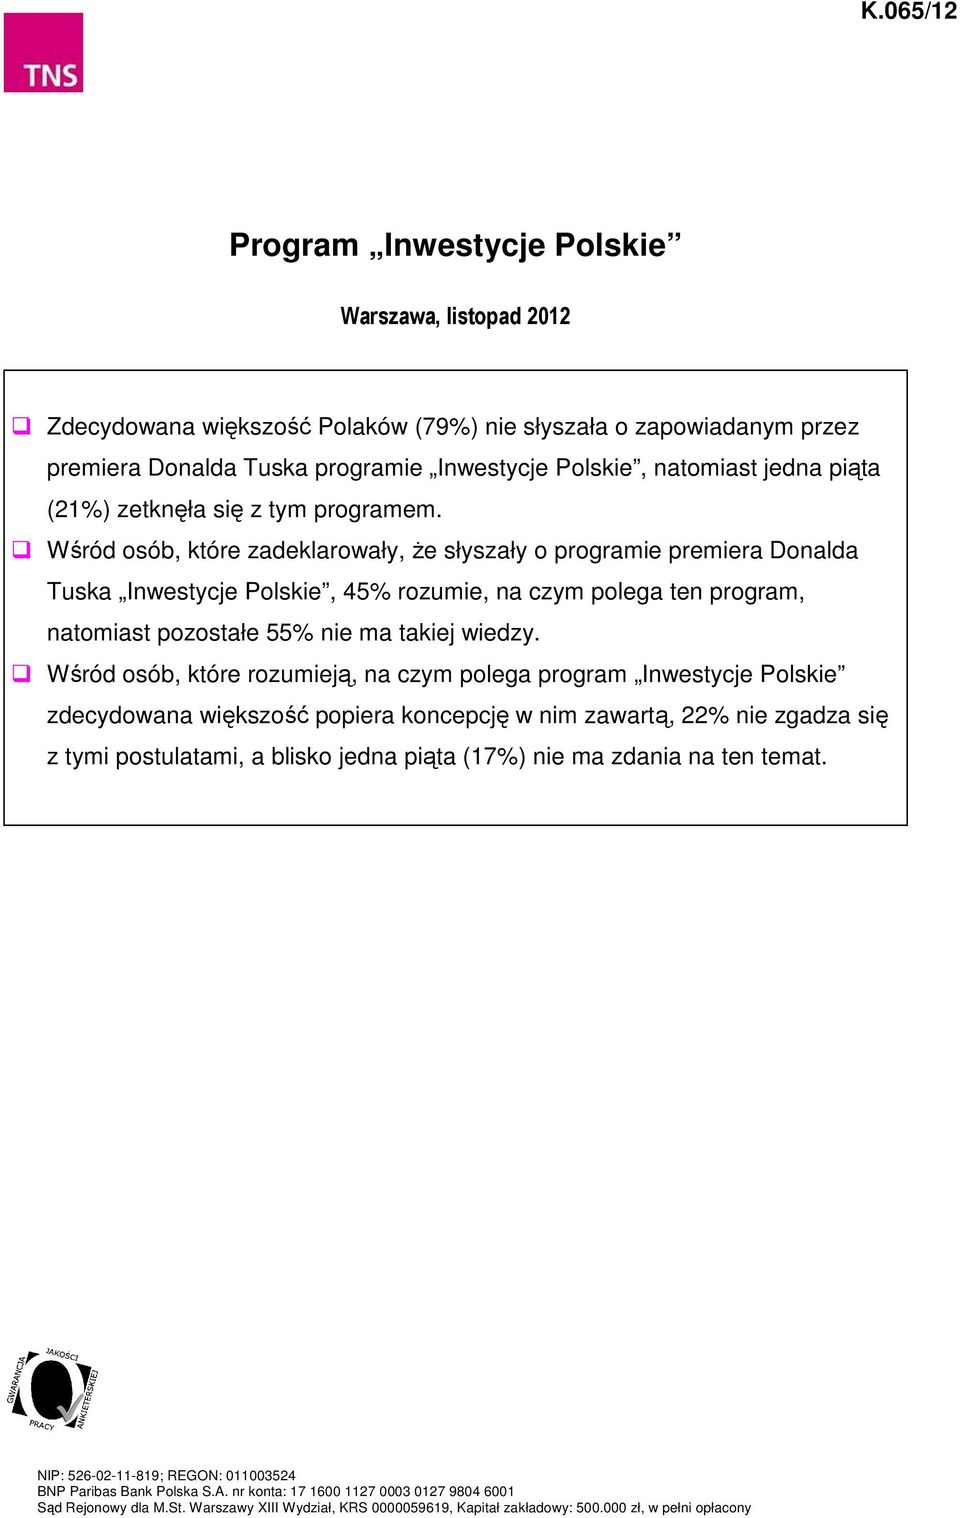 Wśród osób, które zadeklarowały, że słyszały o programie premiera Donalda Tuska Inwestycje Polskie, 45% rozumie, na czym polega ten program, natomiast pozostałe 55% nie ma takiej wiedzy.